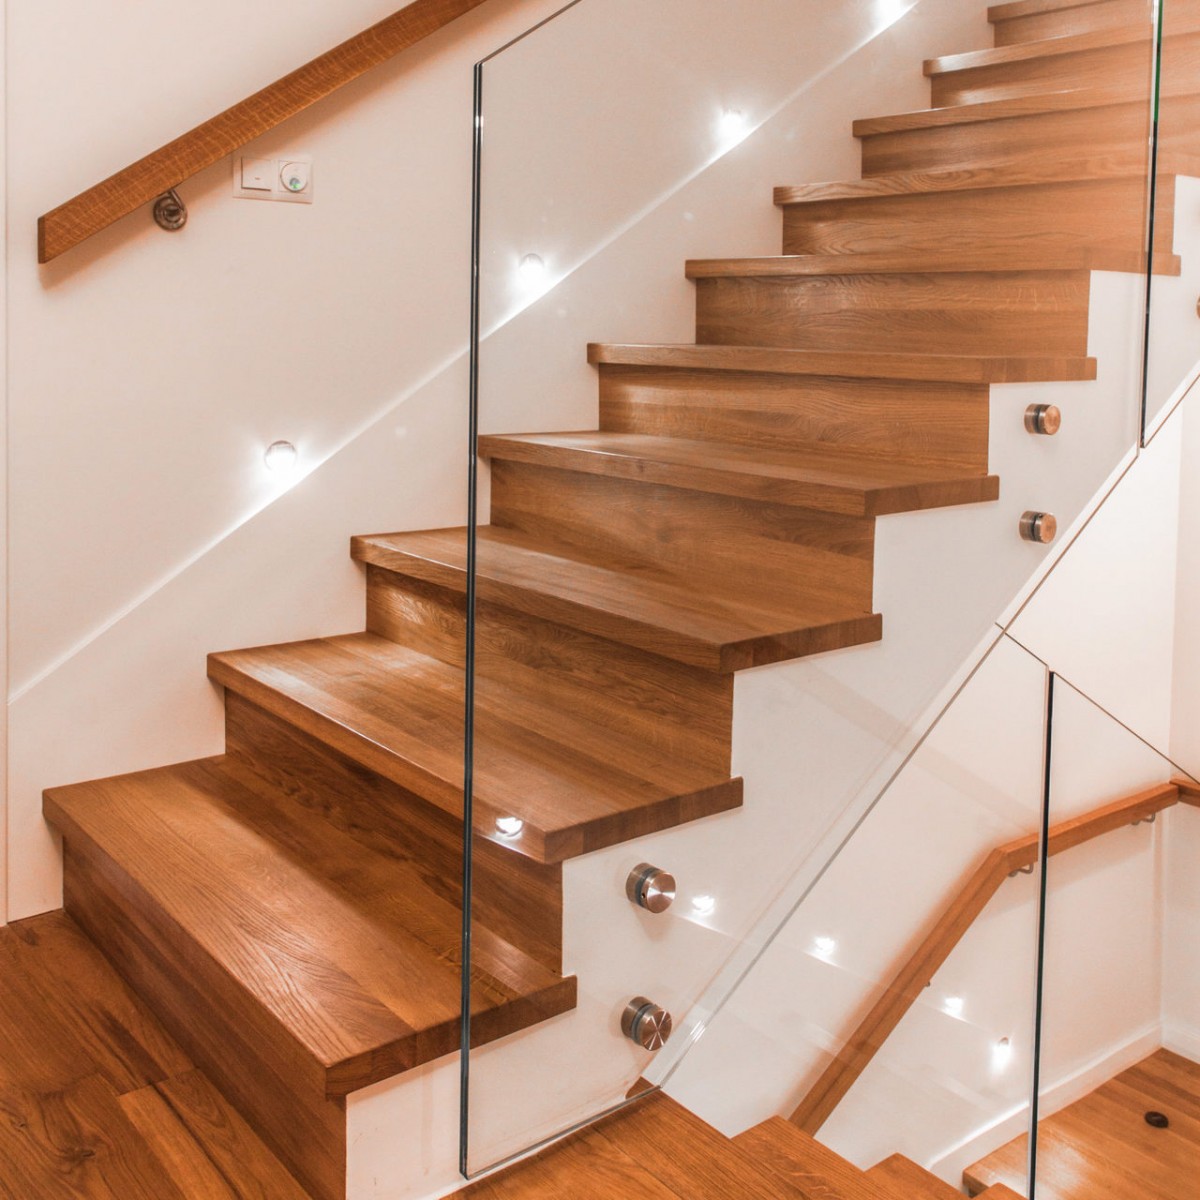  schody drewniane i szklane balustrady na rotulach